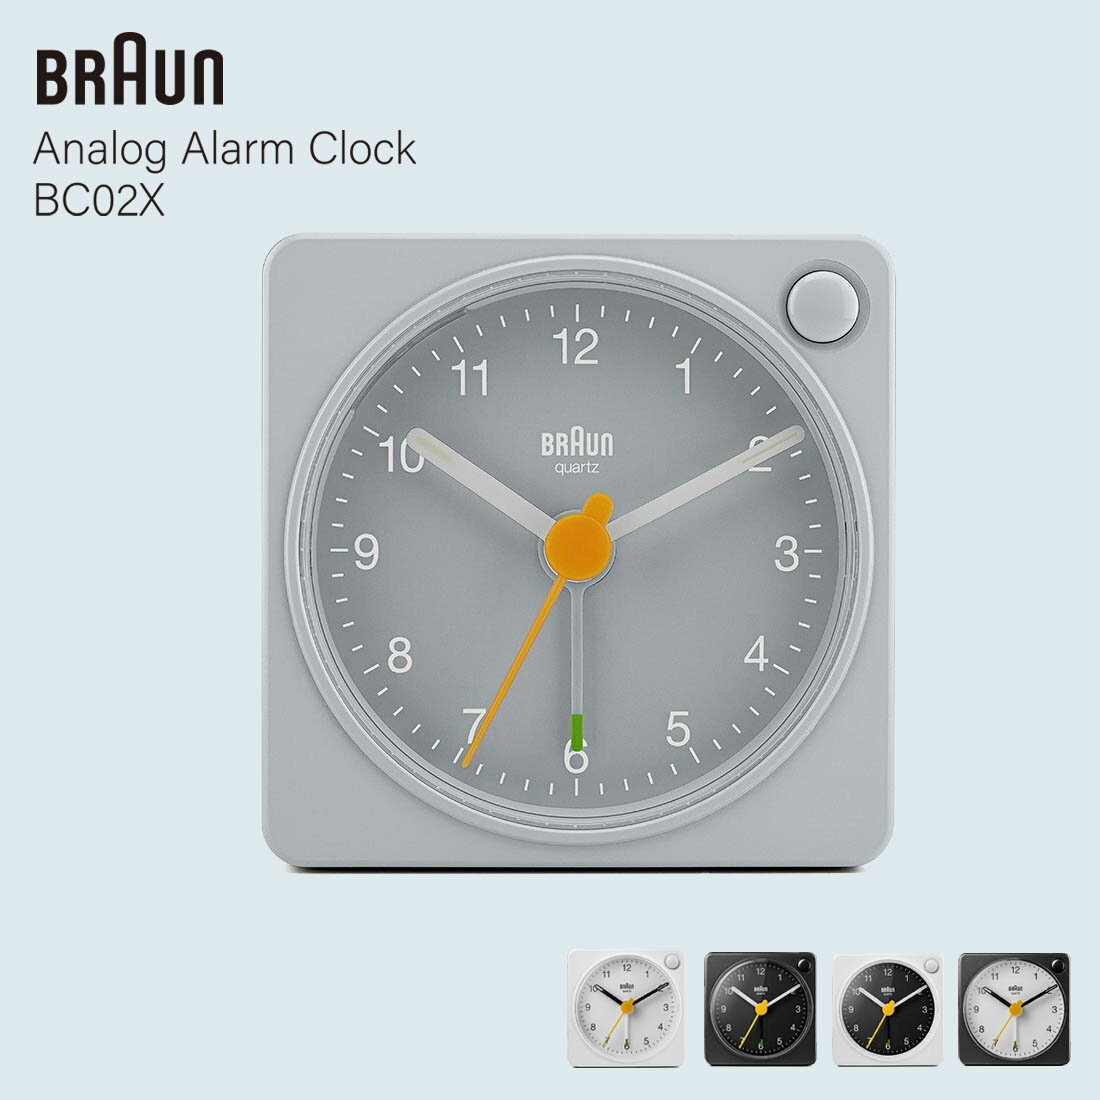 BRAUN ブラウン Analog Alarm Clock BC02X アナログアラームクロック 置き時計 目覚まし時計 スヌーズ ミニマル デザイン 1